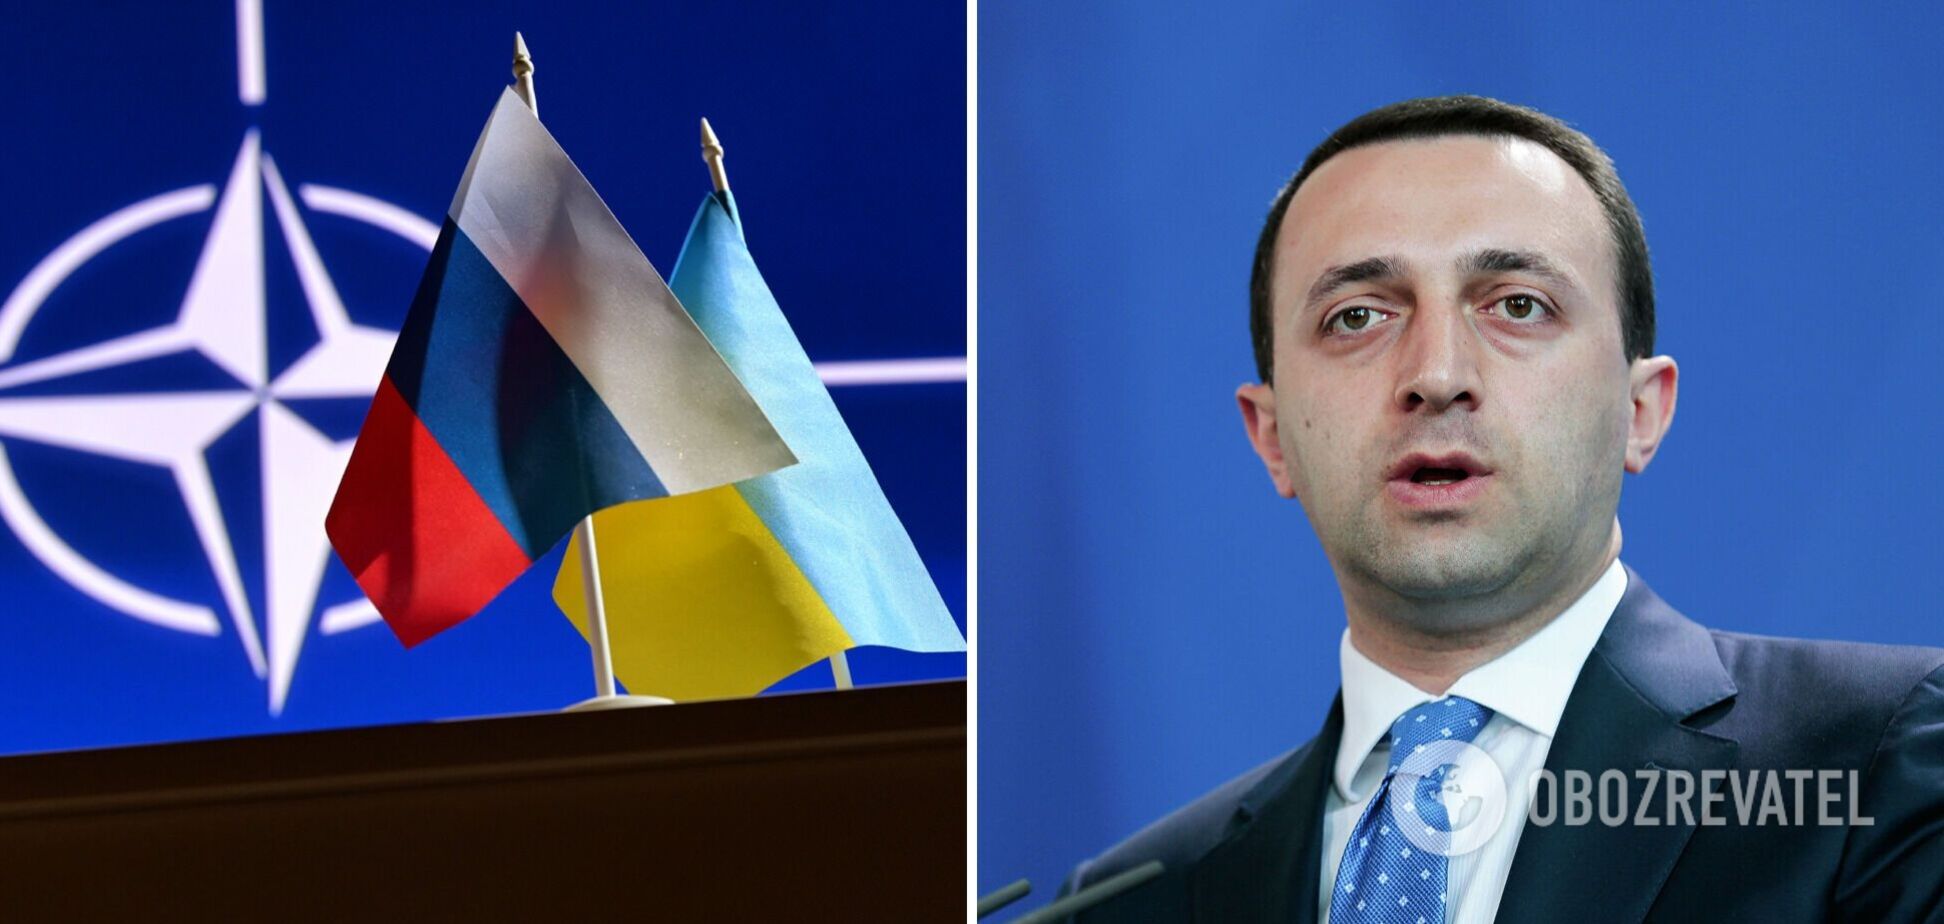 ’Все понимают причину’: премьер Грузии оправдал российскую агрессию против Украины стремлением вступить в НАТО